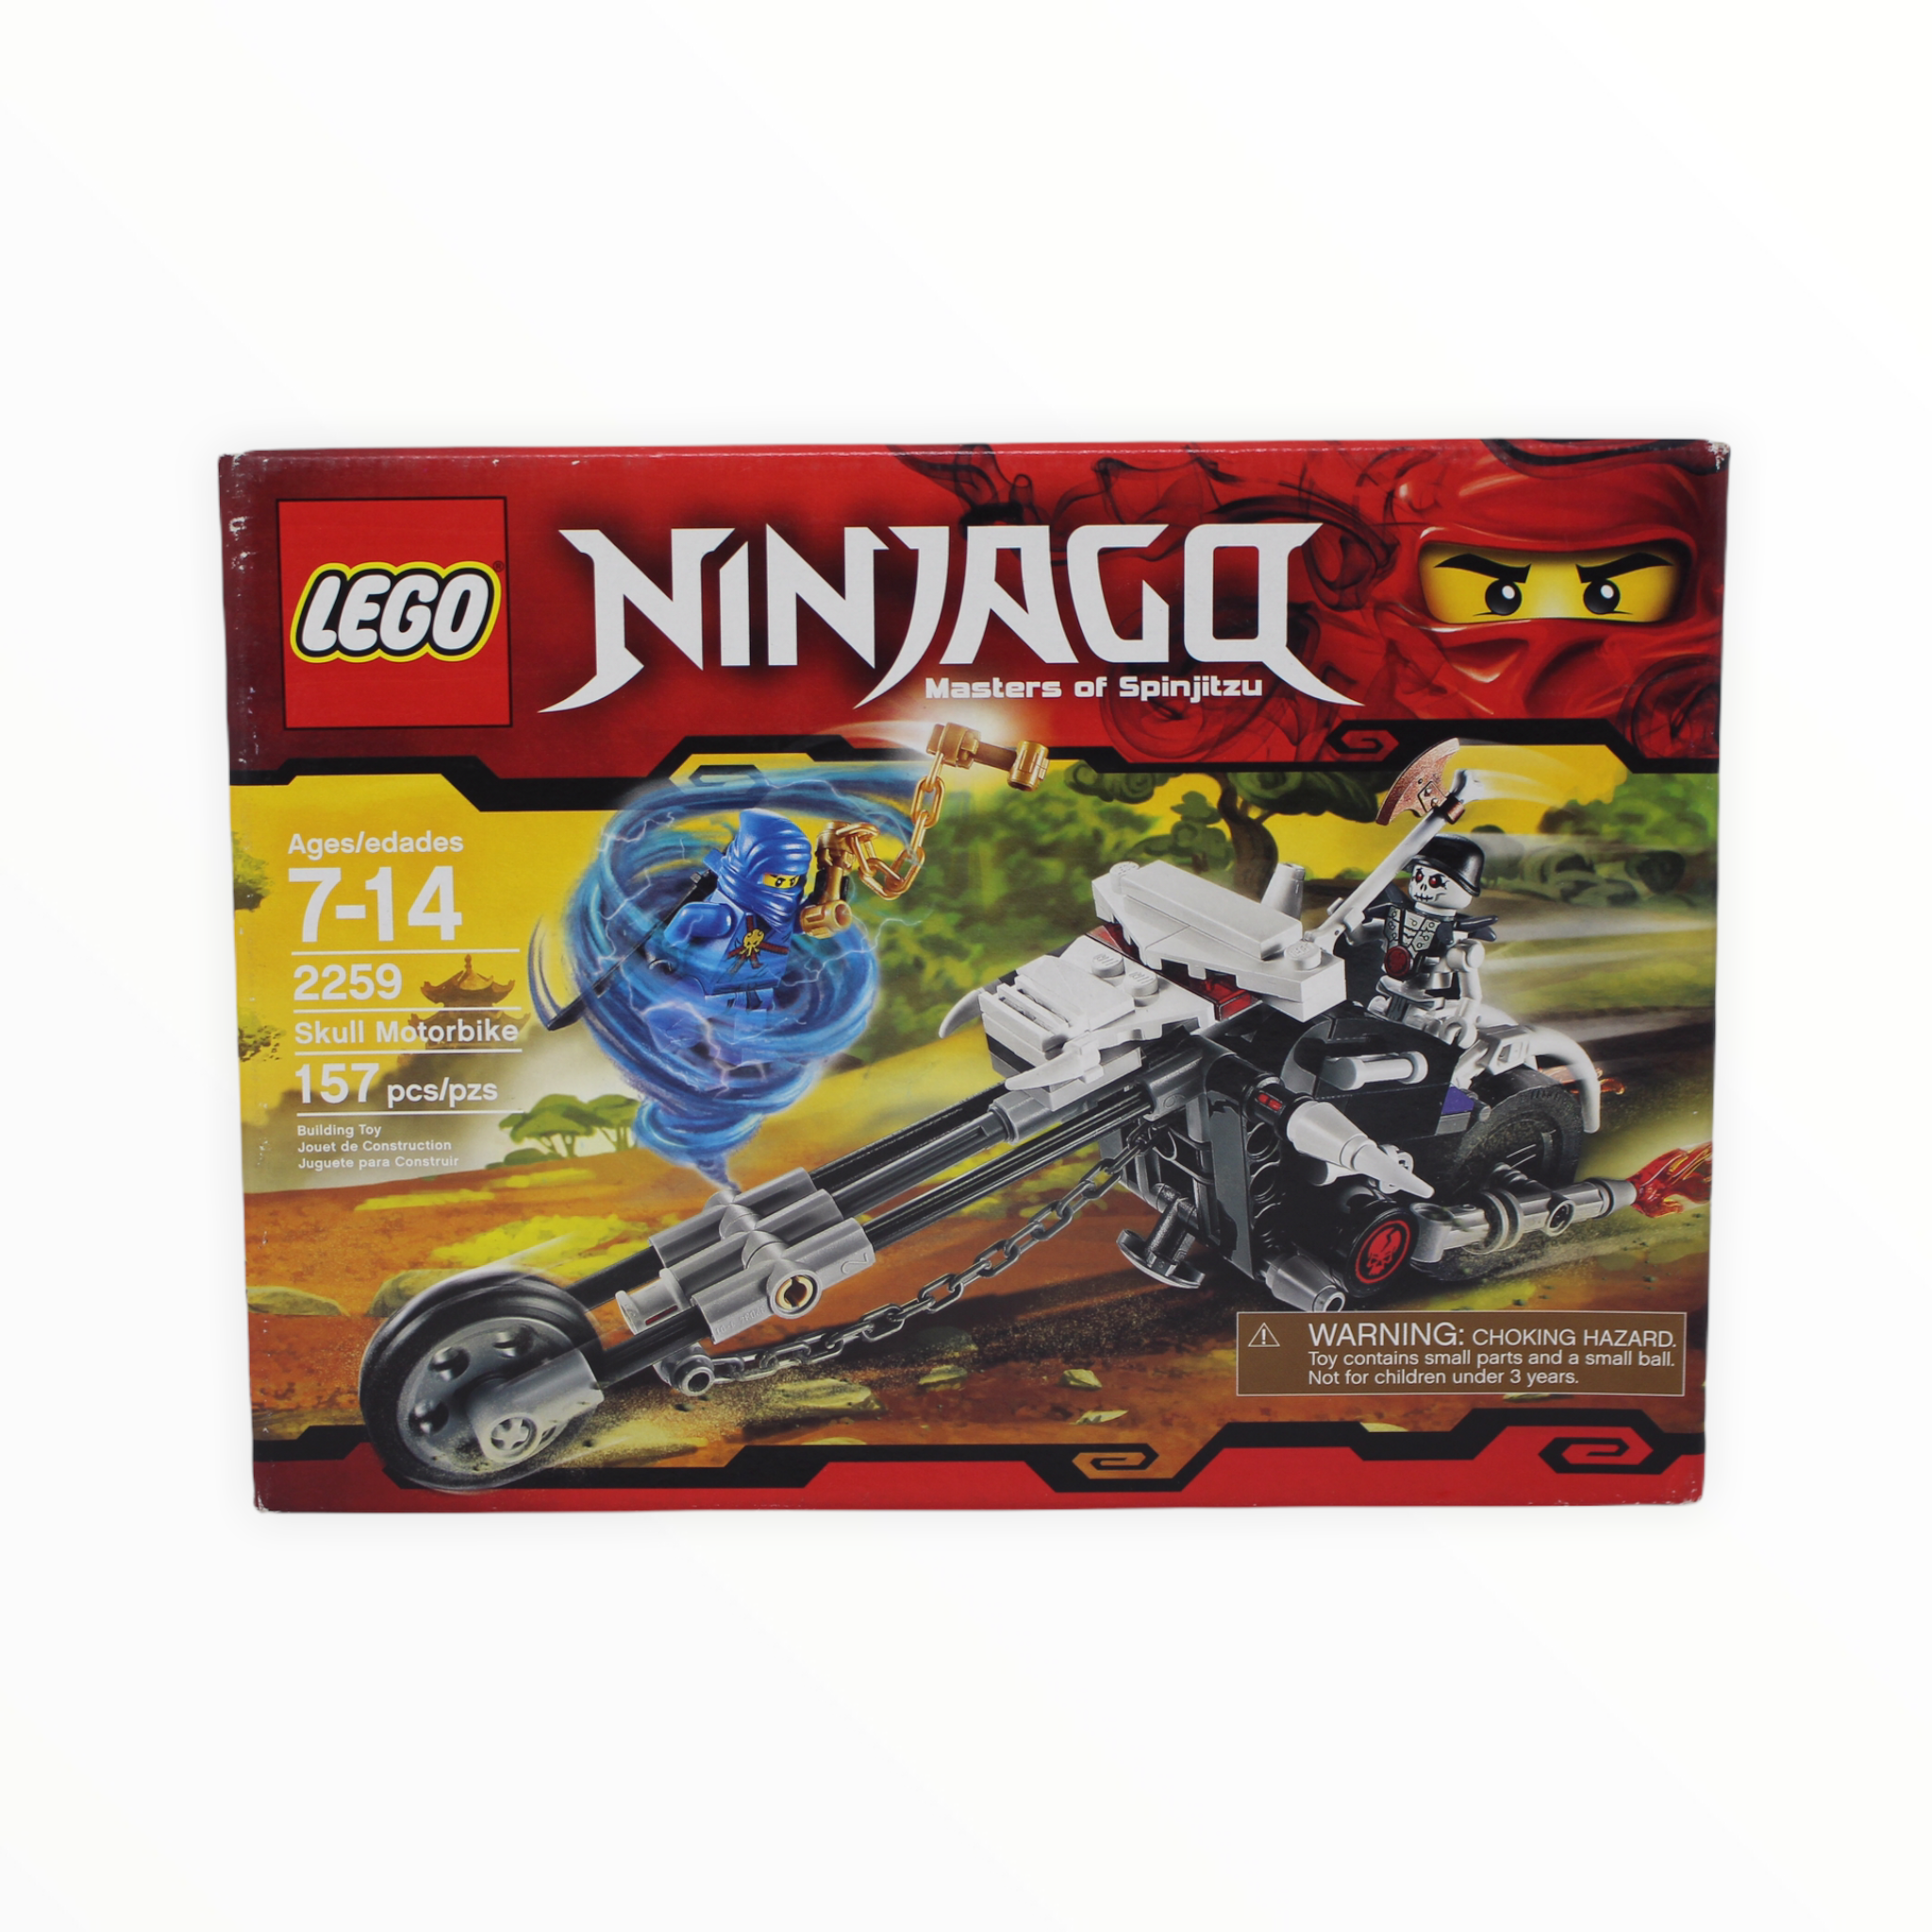 Retired Set 2259 Ninjago Skull Motorbike